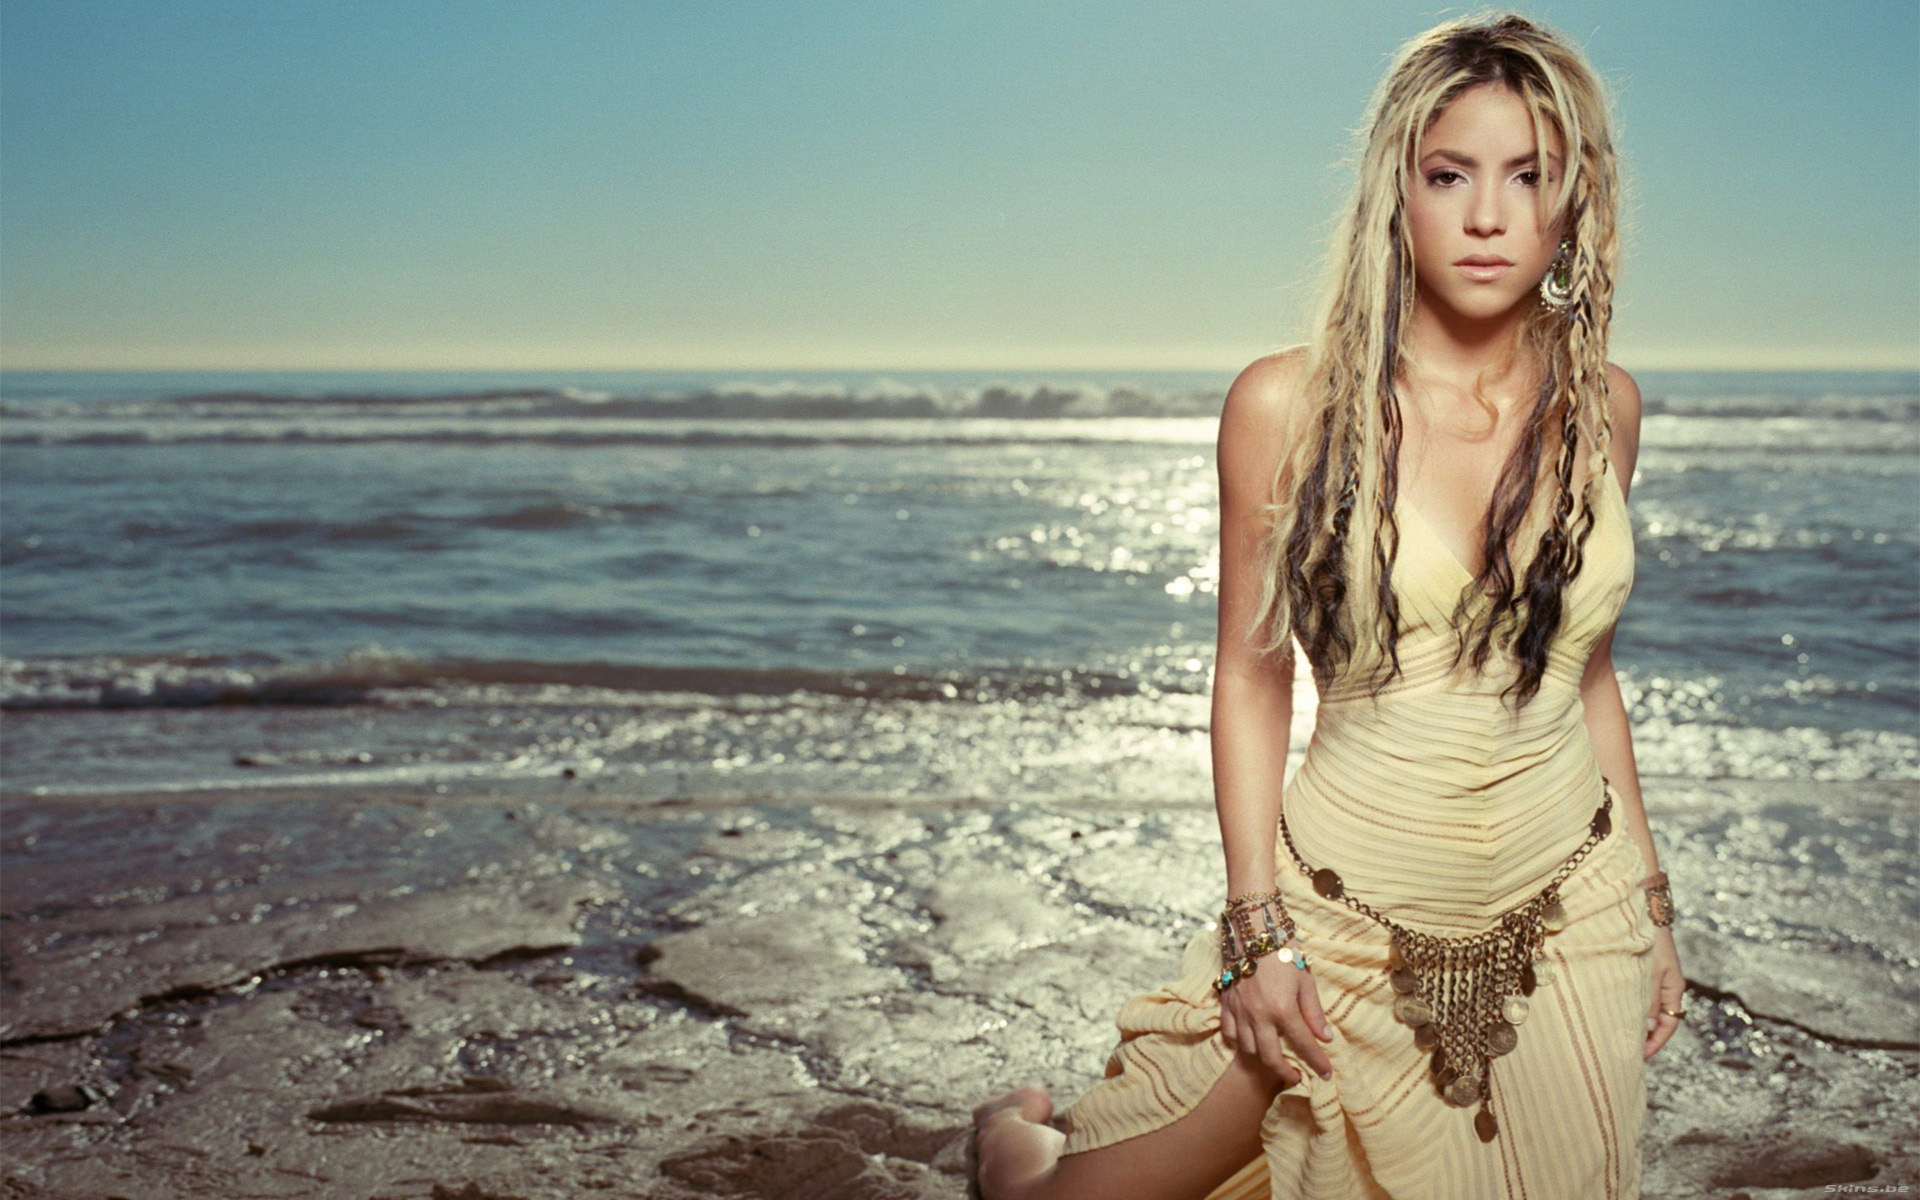 Шакира (Shakira) (30 HQ фото)